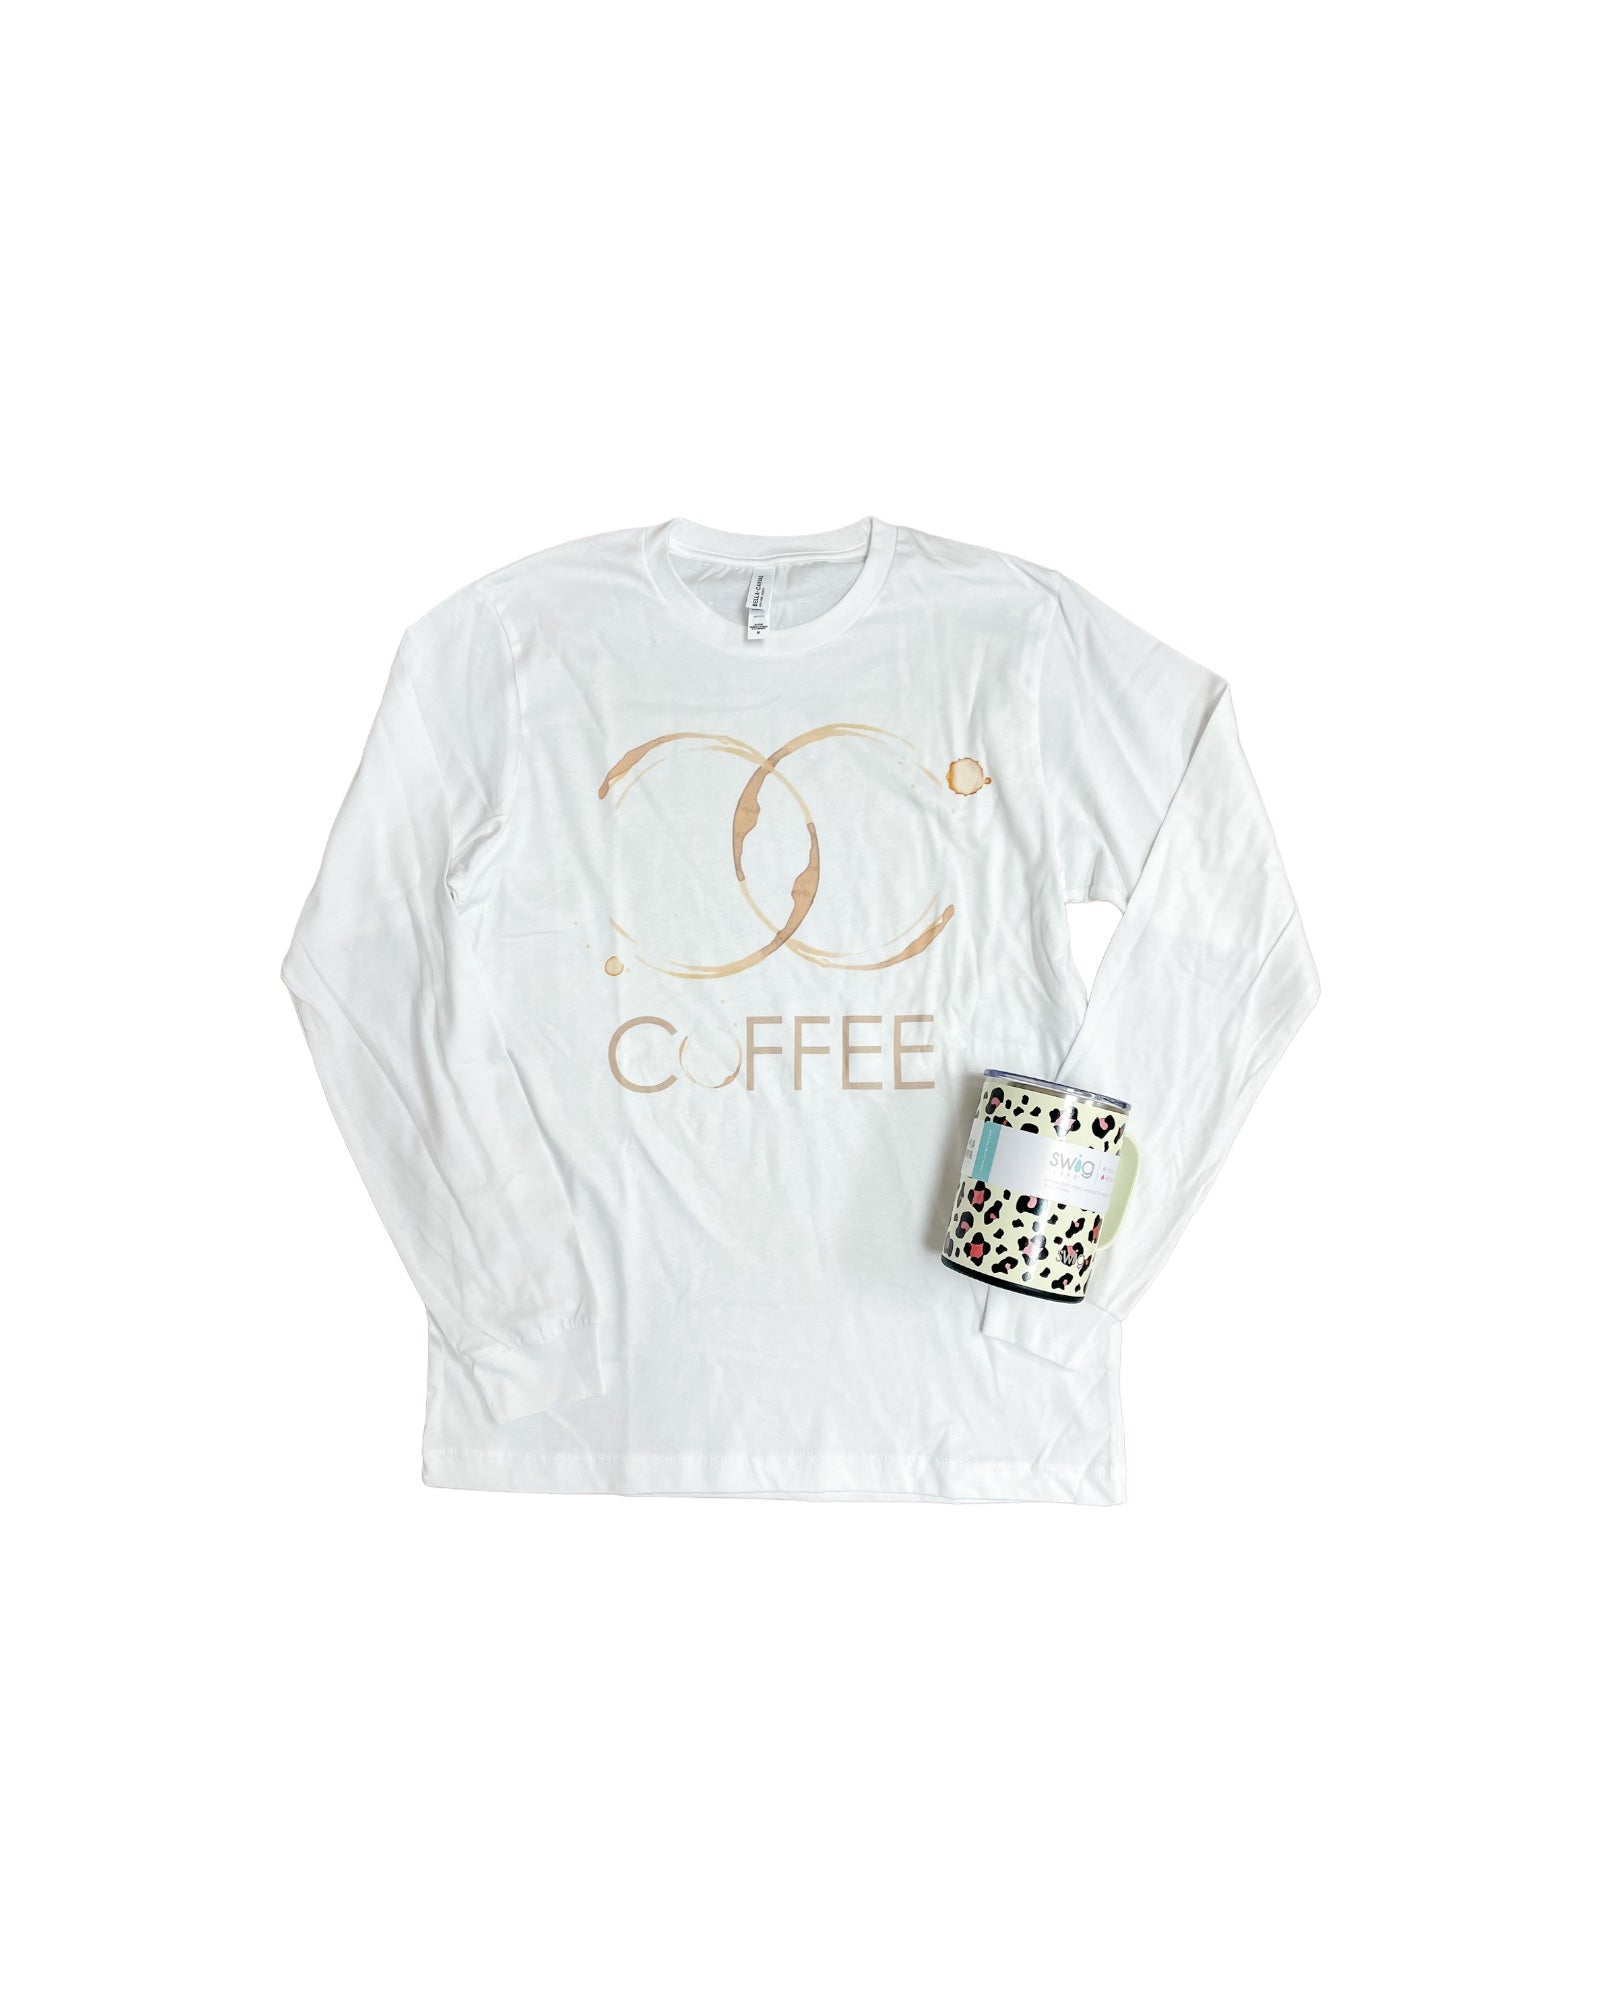 Coffee Stain TShirt, White